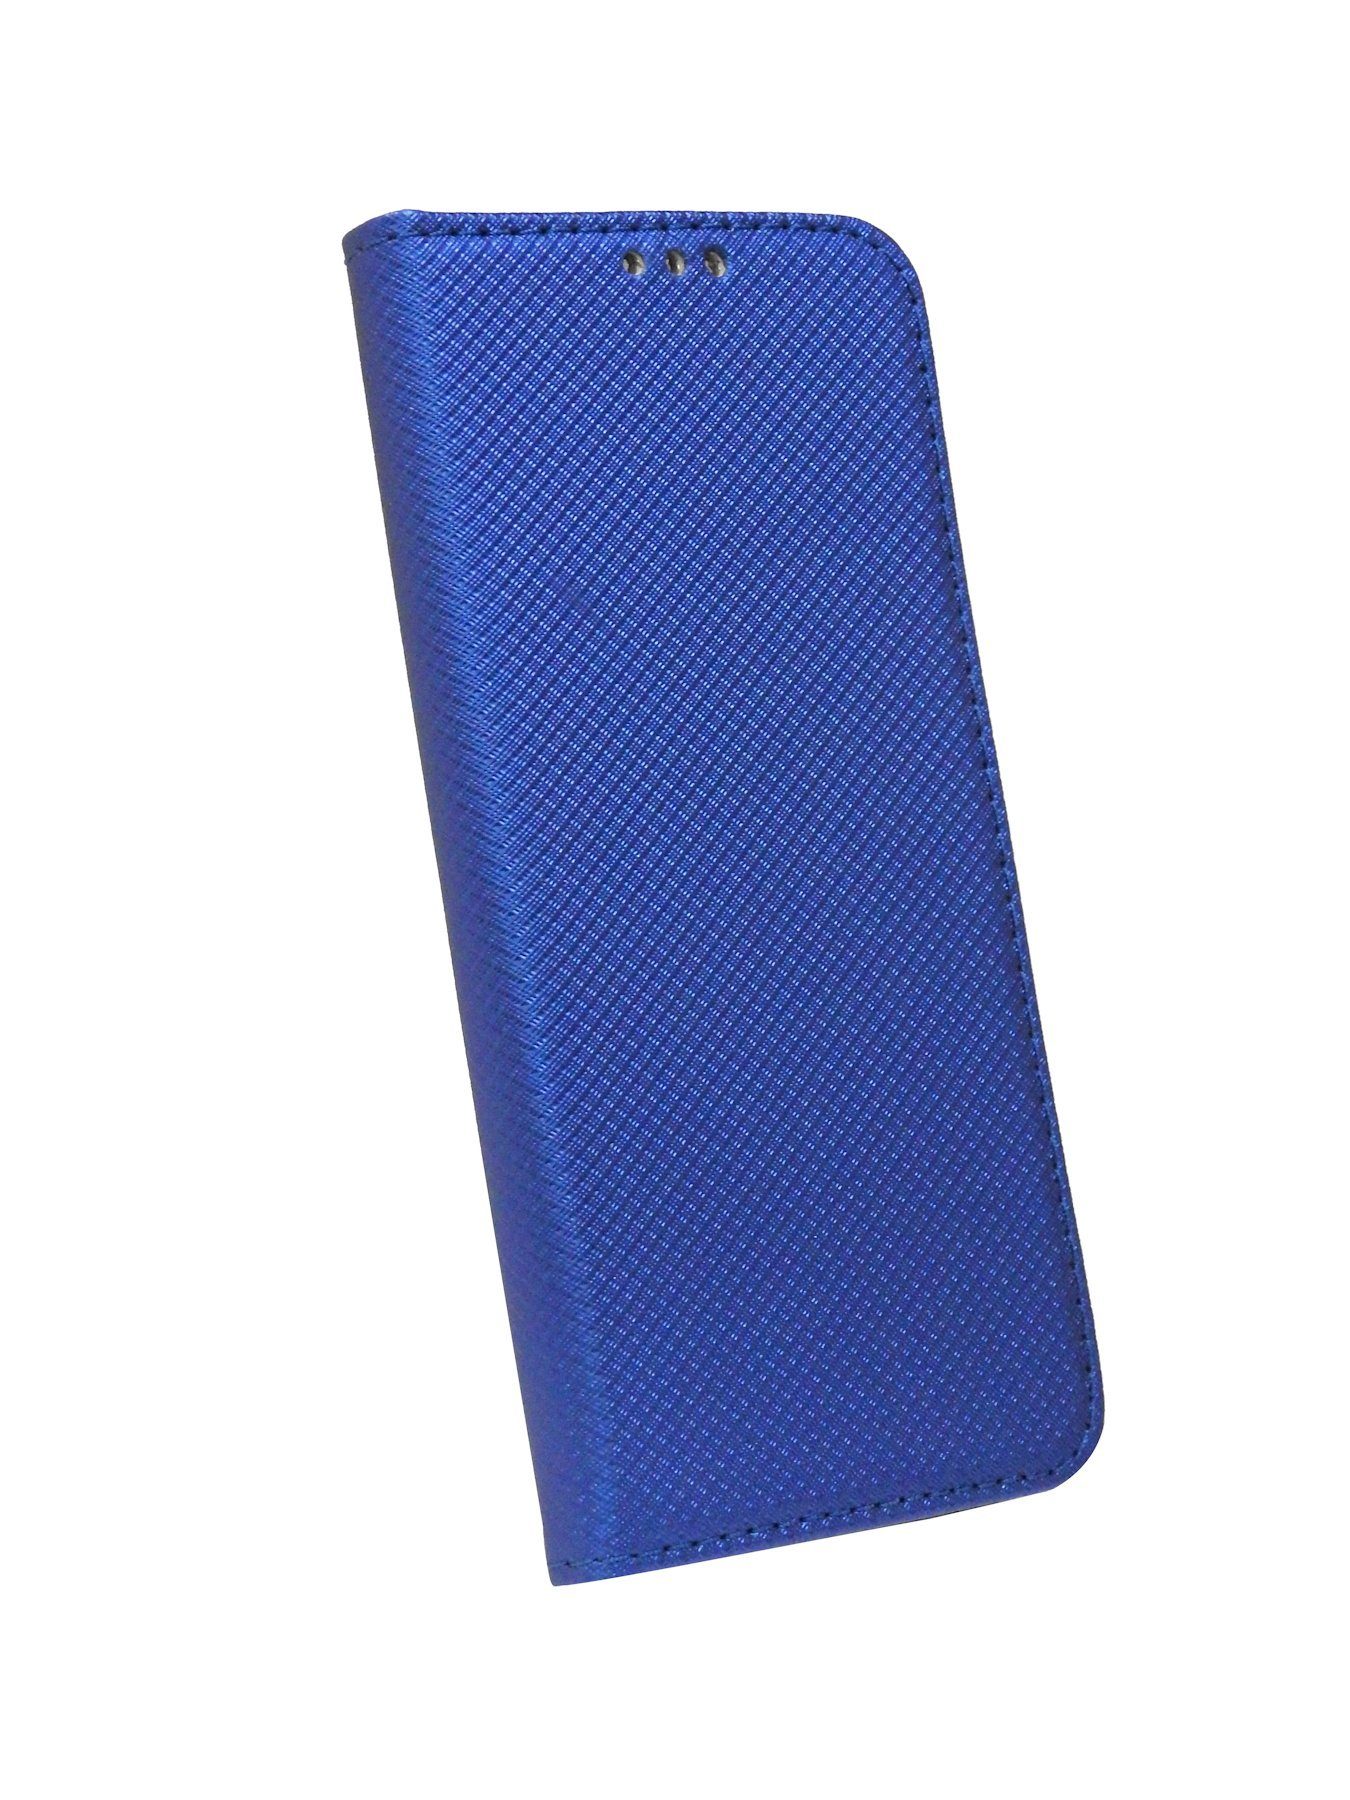 L3 Kartenfach Blau Tasche Hülle Brieftasche Schutzhülle Handytasche "Smart" cofi1453 Handy SONY mit mit kompatibel Standfunktion, XPERIA Etui Buch